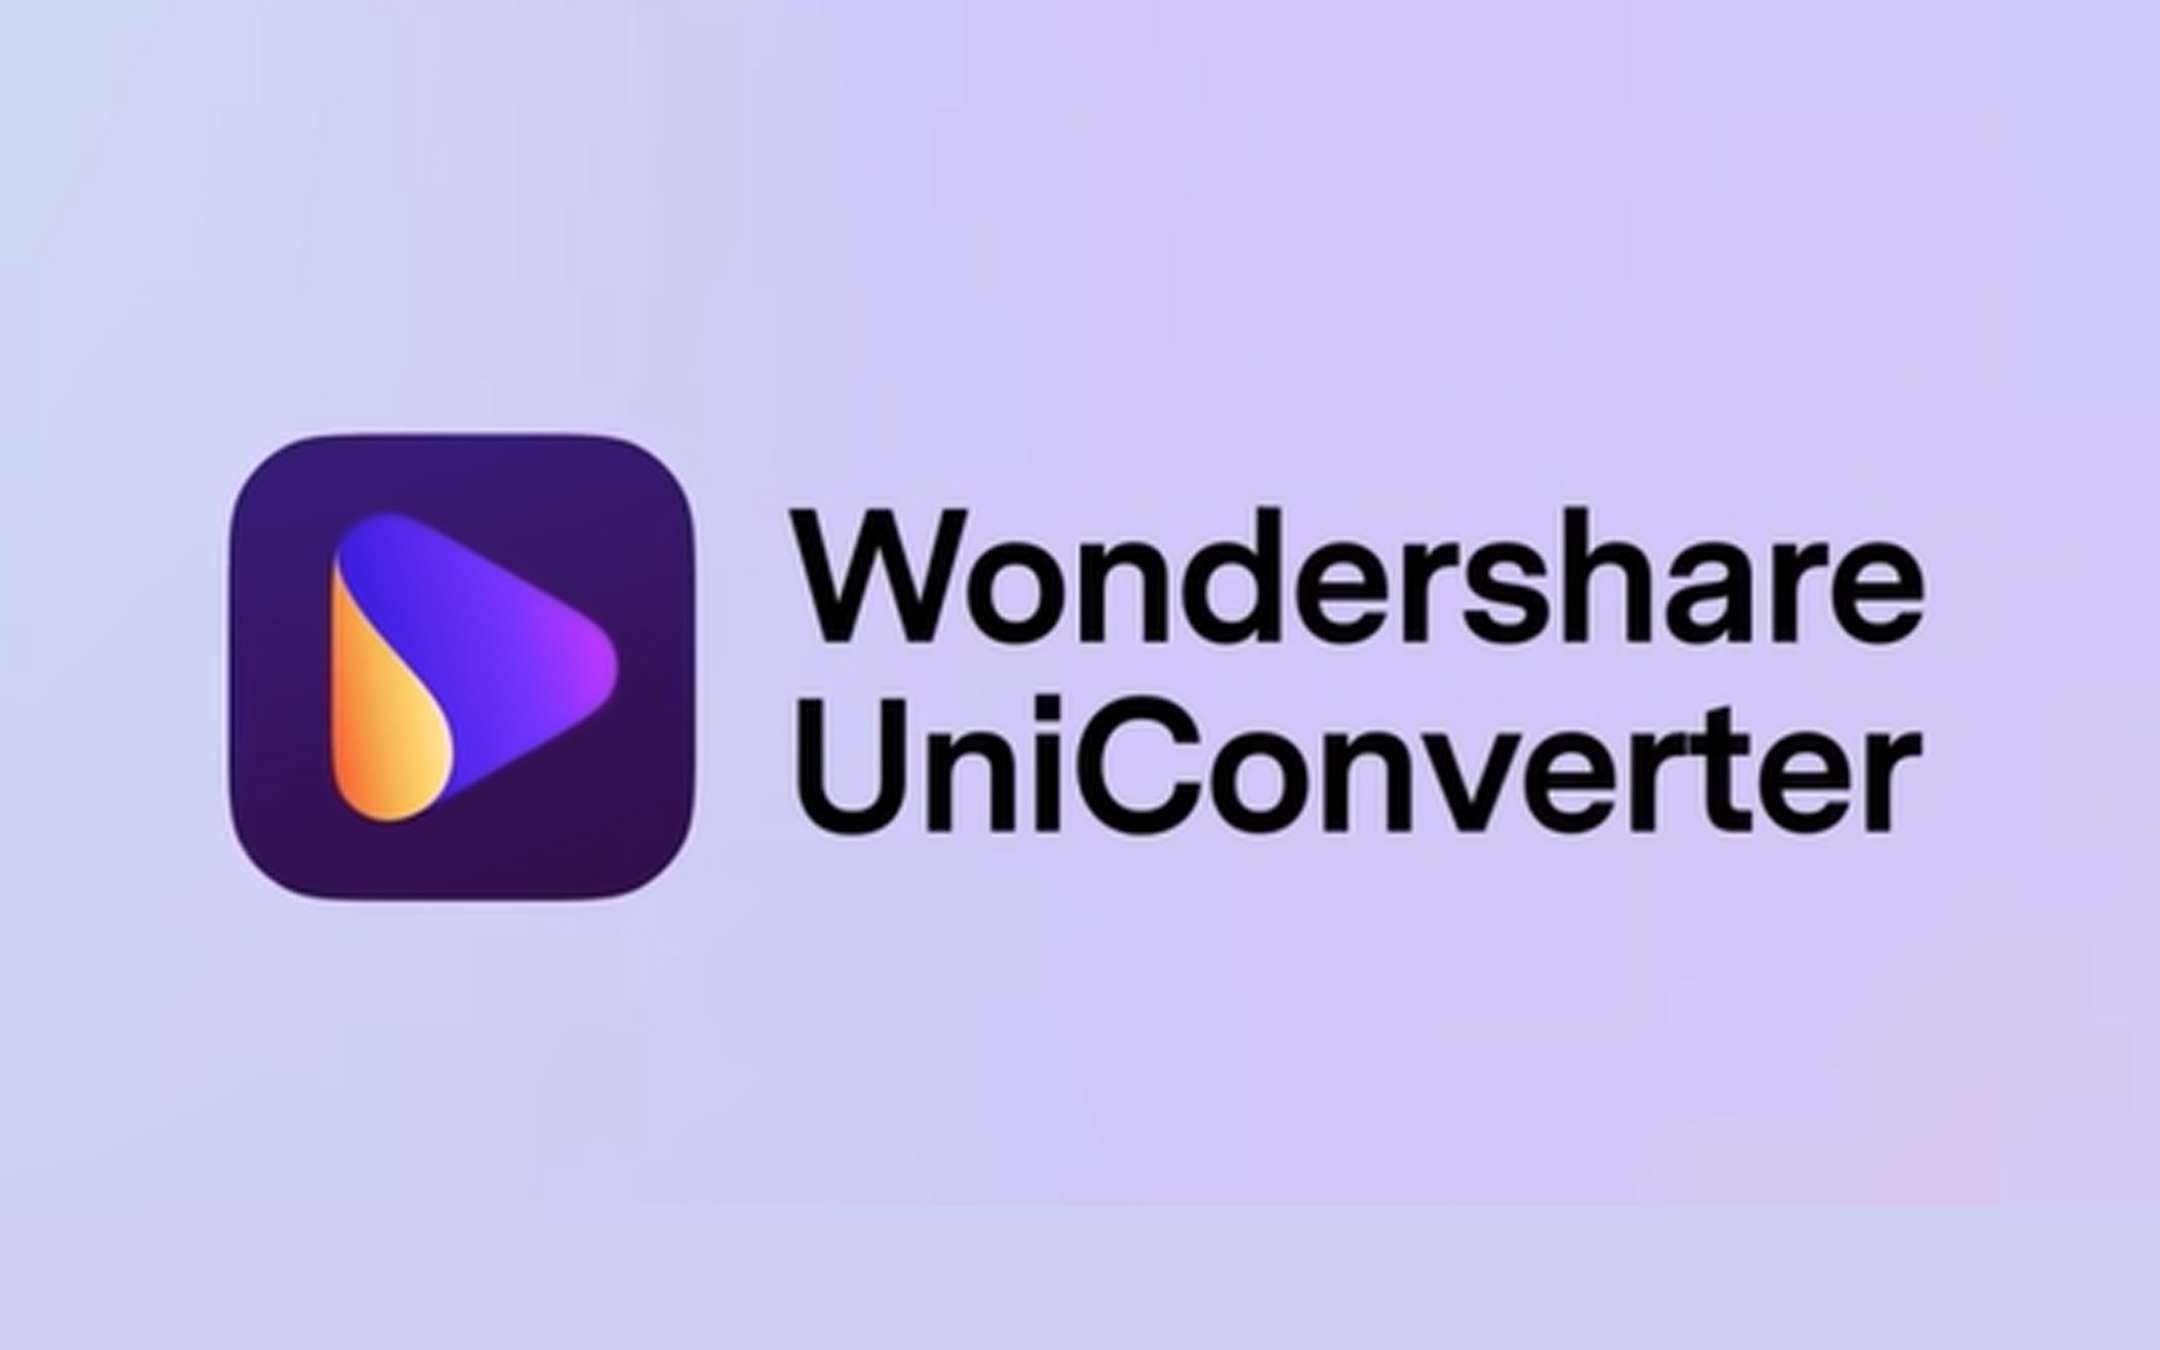 Wondershare UniConverter, acquistalo al 10% di sconto